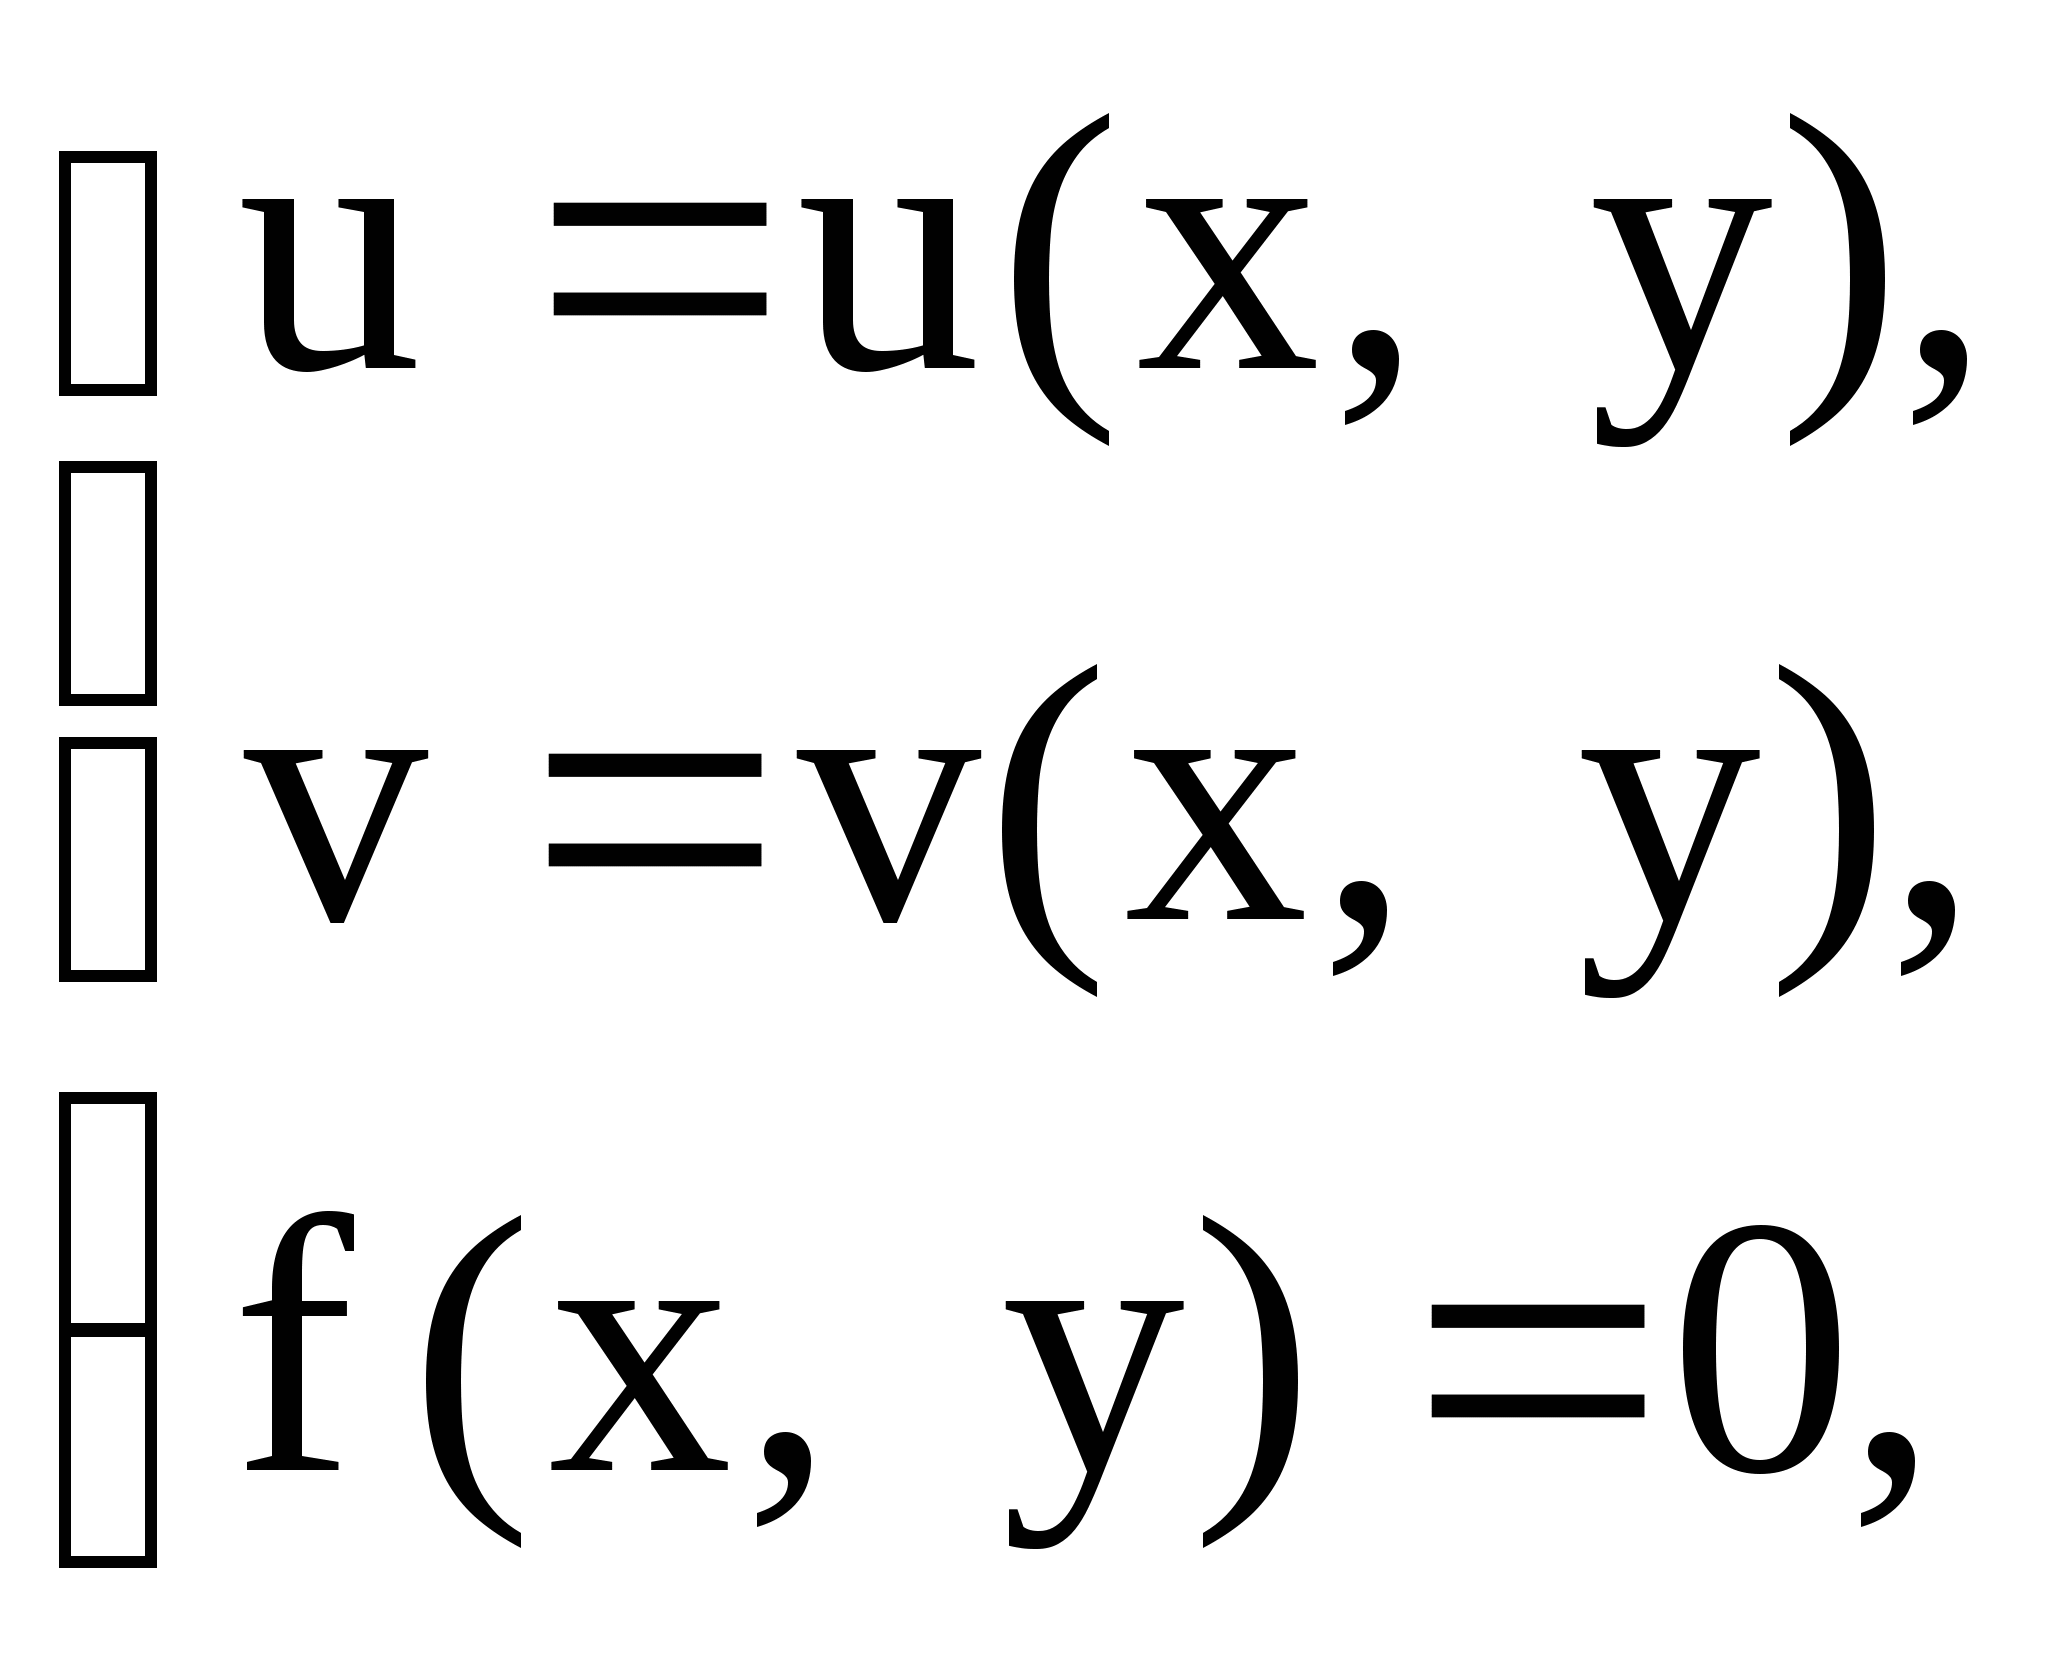 Практикум по комплексным числам и функциям